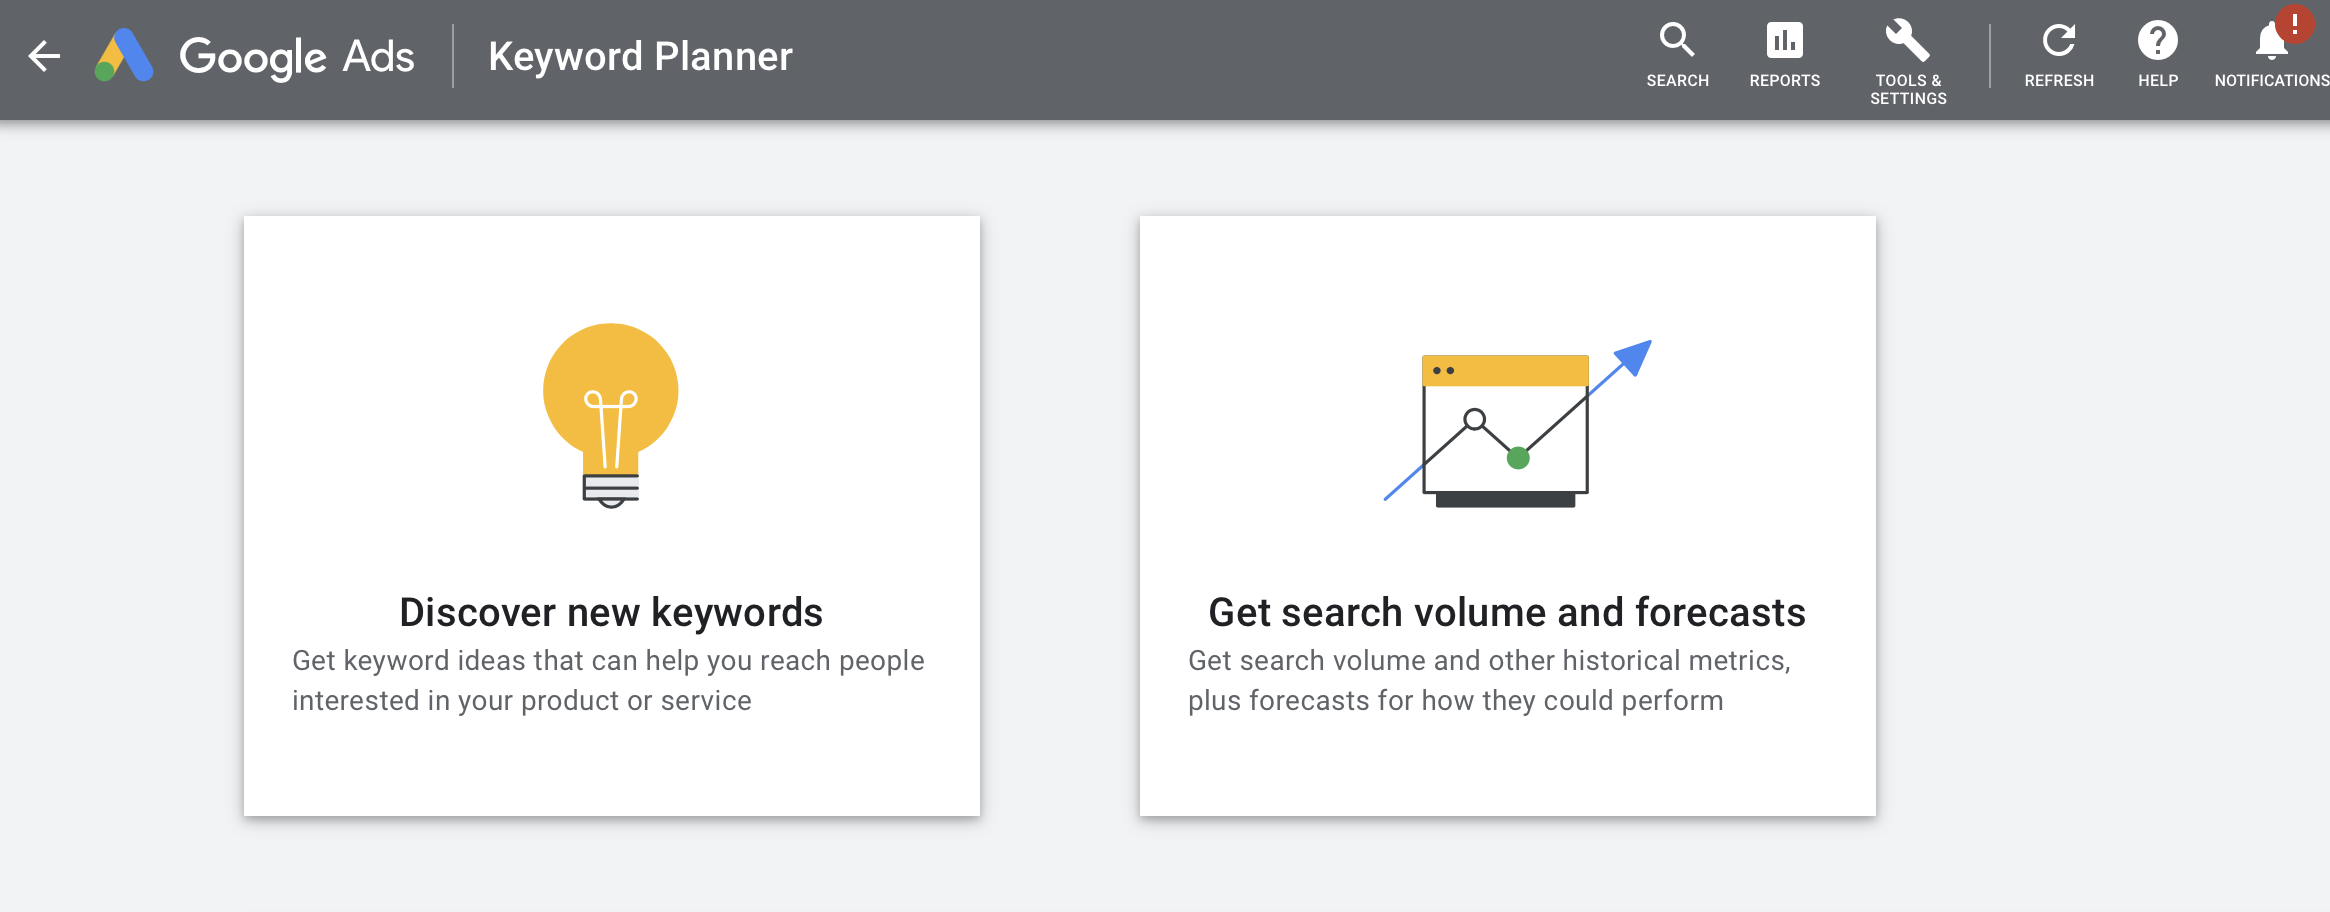 Google Ads Keyword Planner: 2 Tools